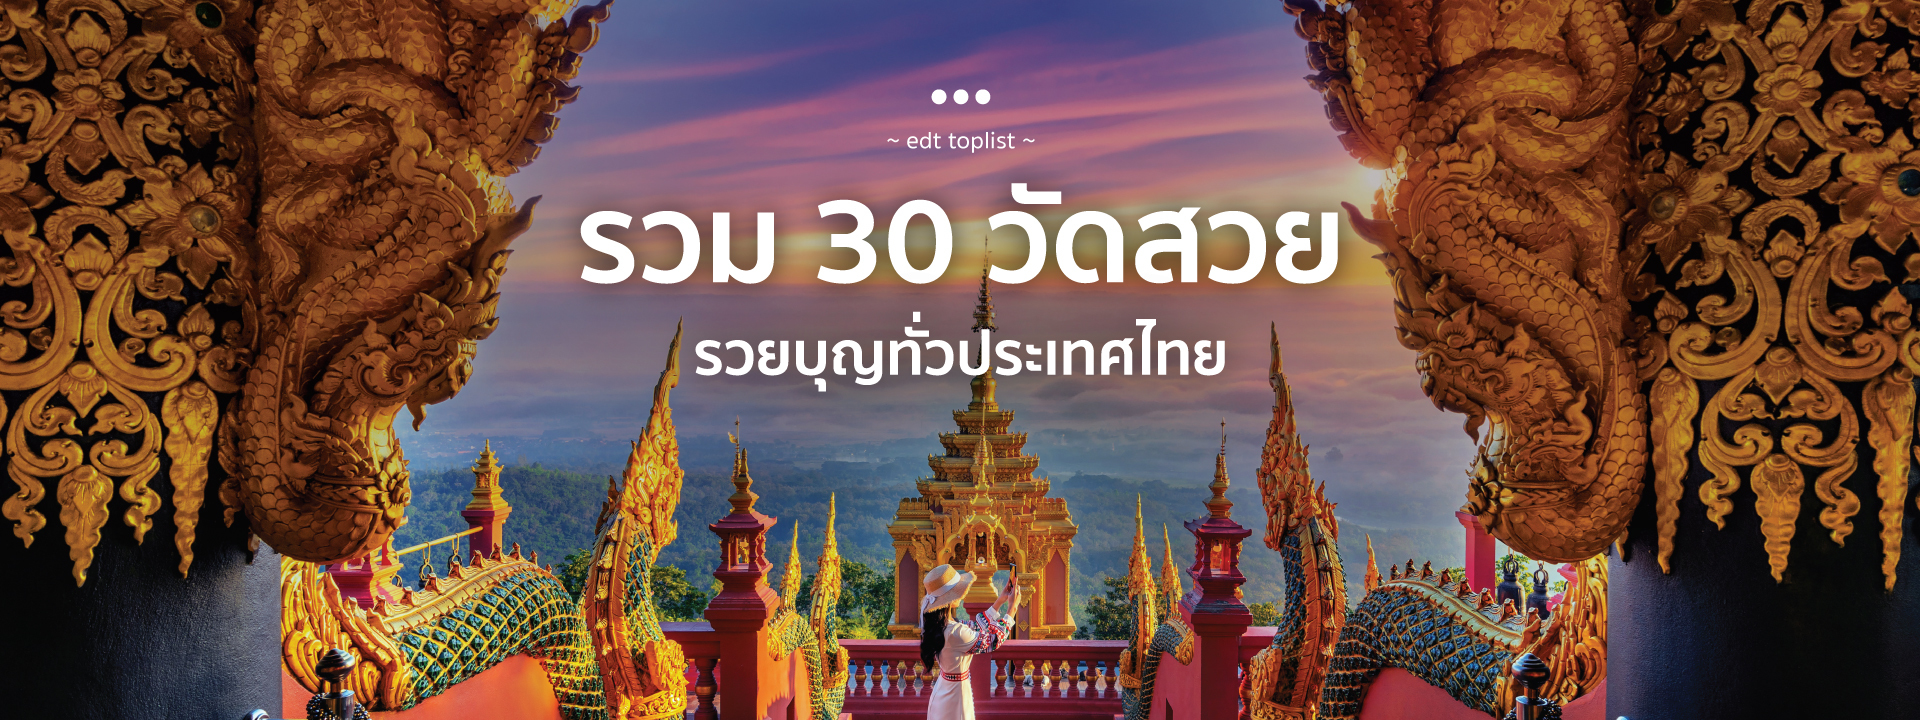 รวม 30 วัดสวยรวยบุญทั่วประเทศไทย